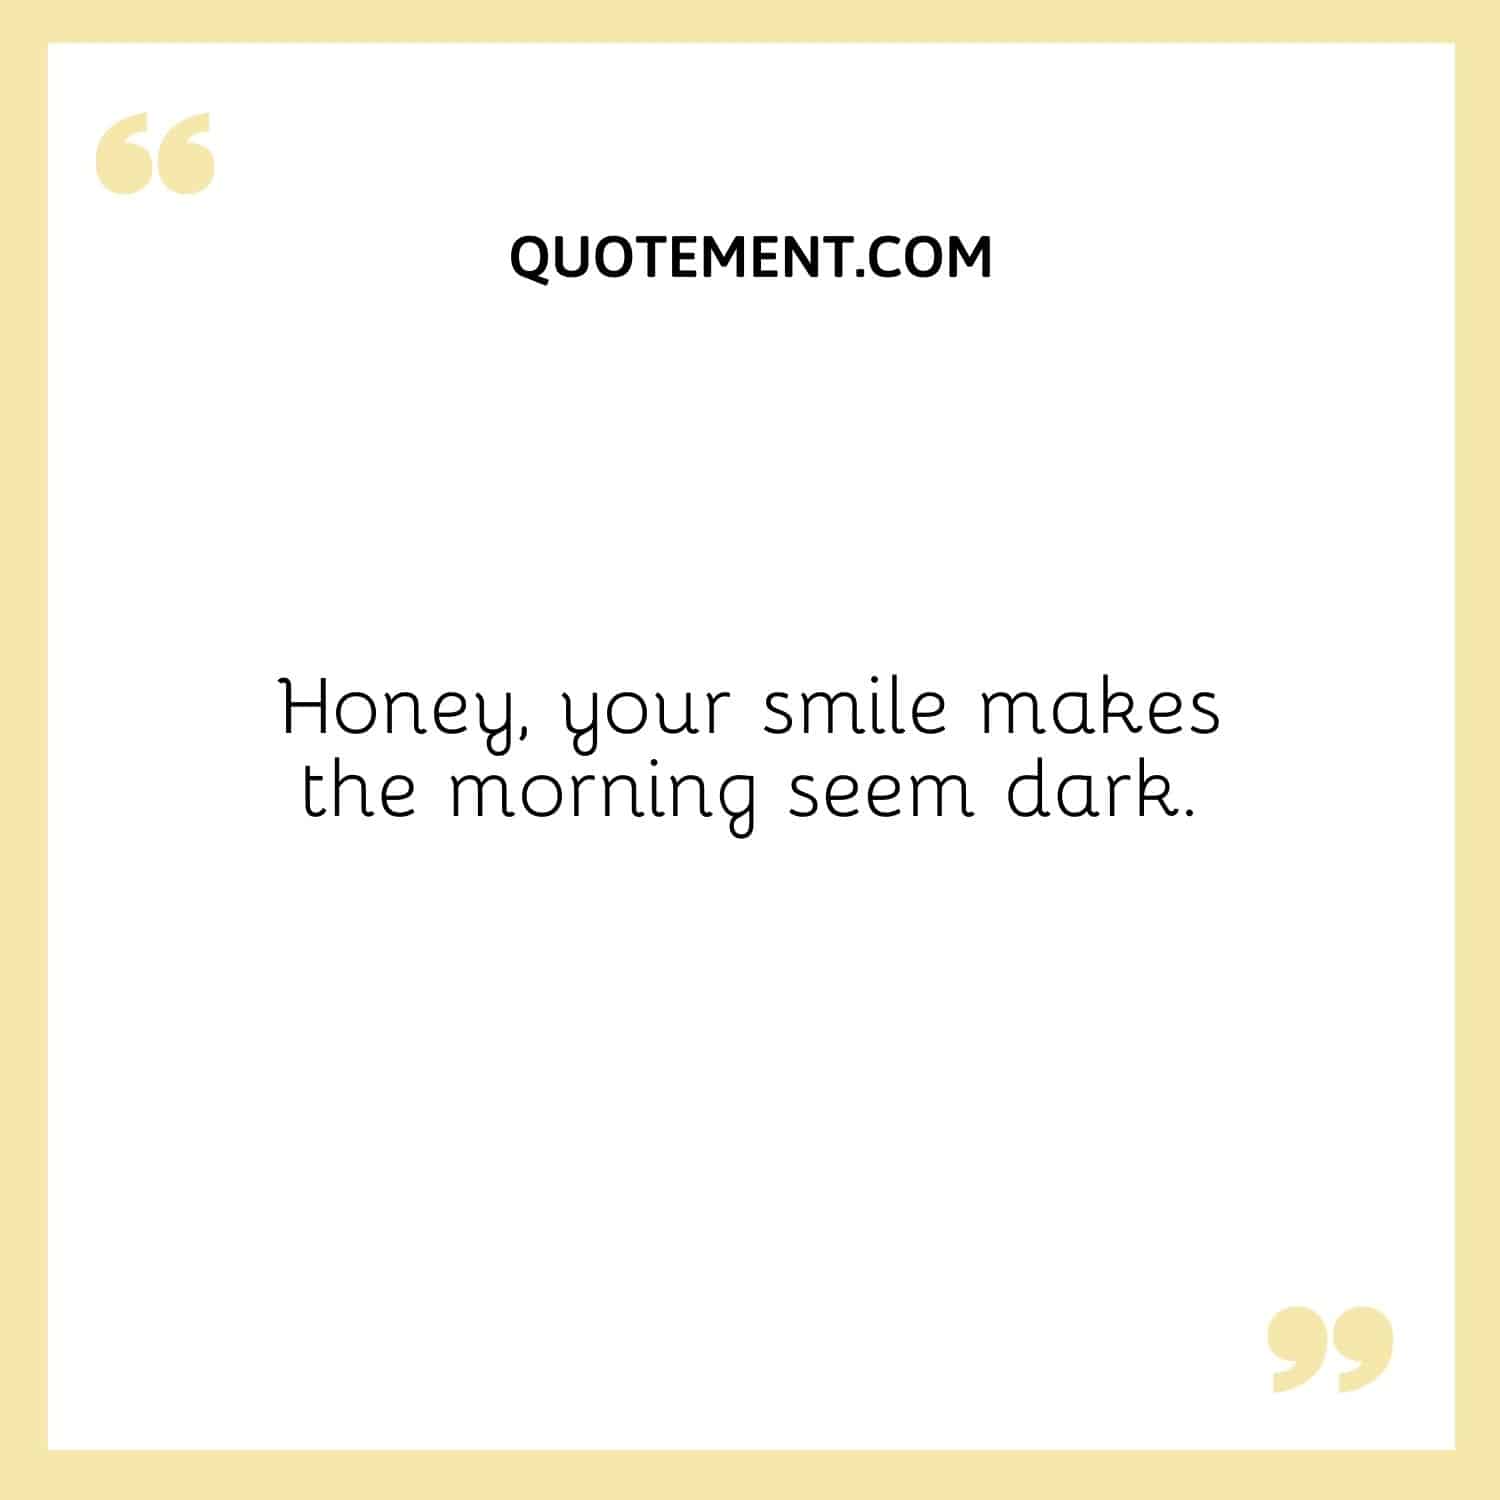 Honey, your smile makes the morning seem dark.